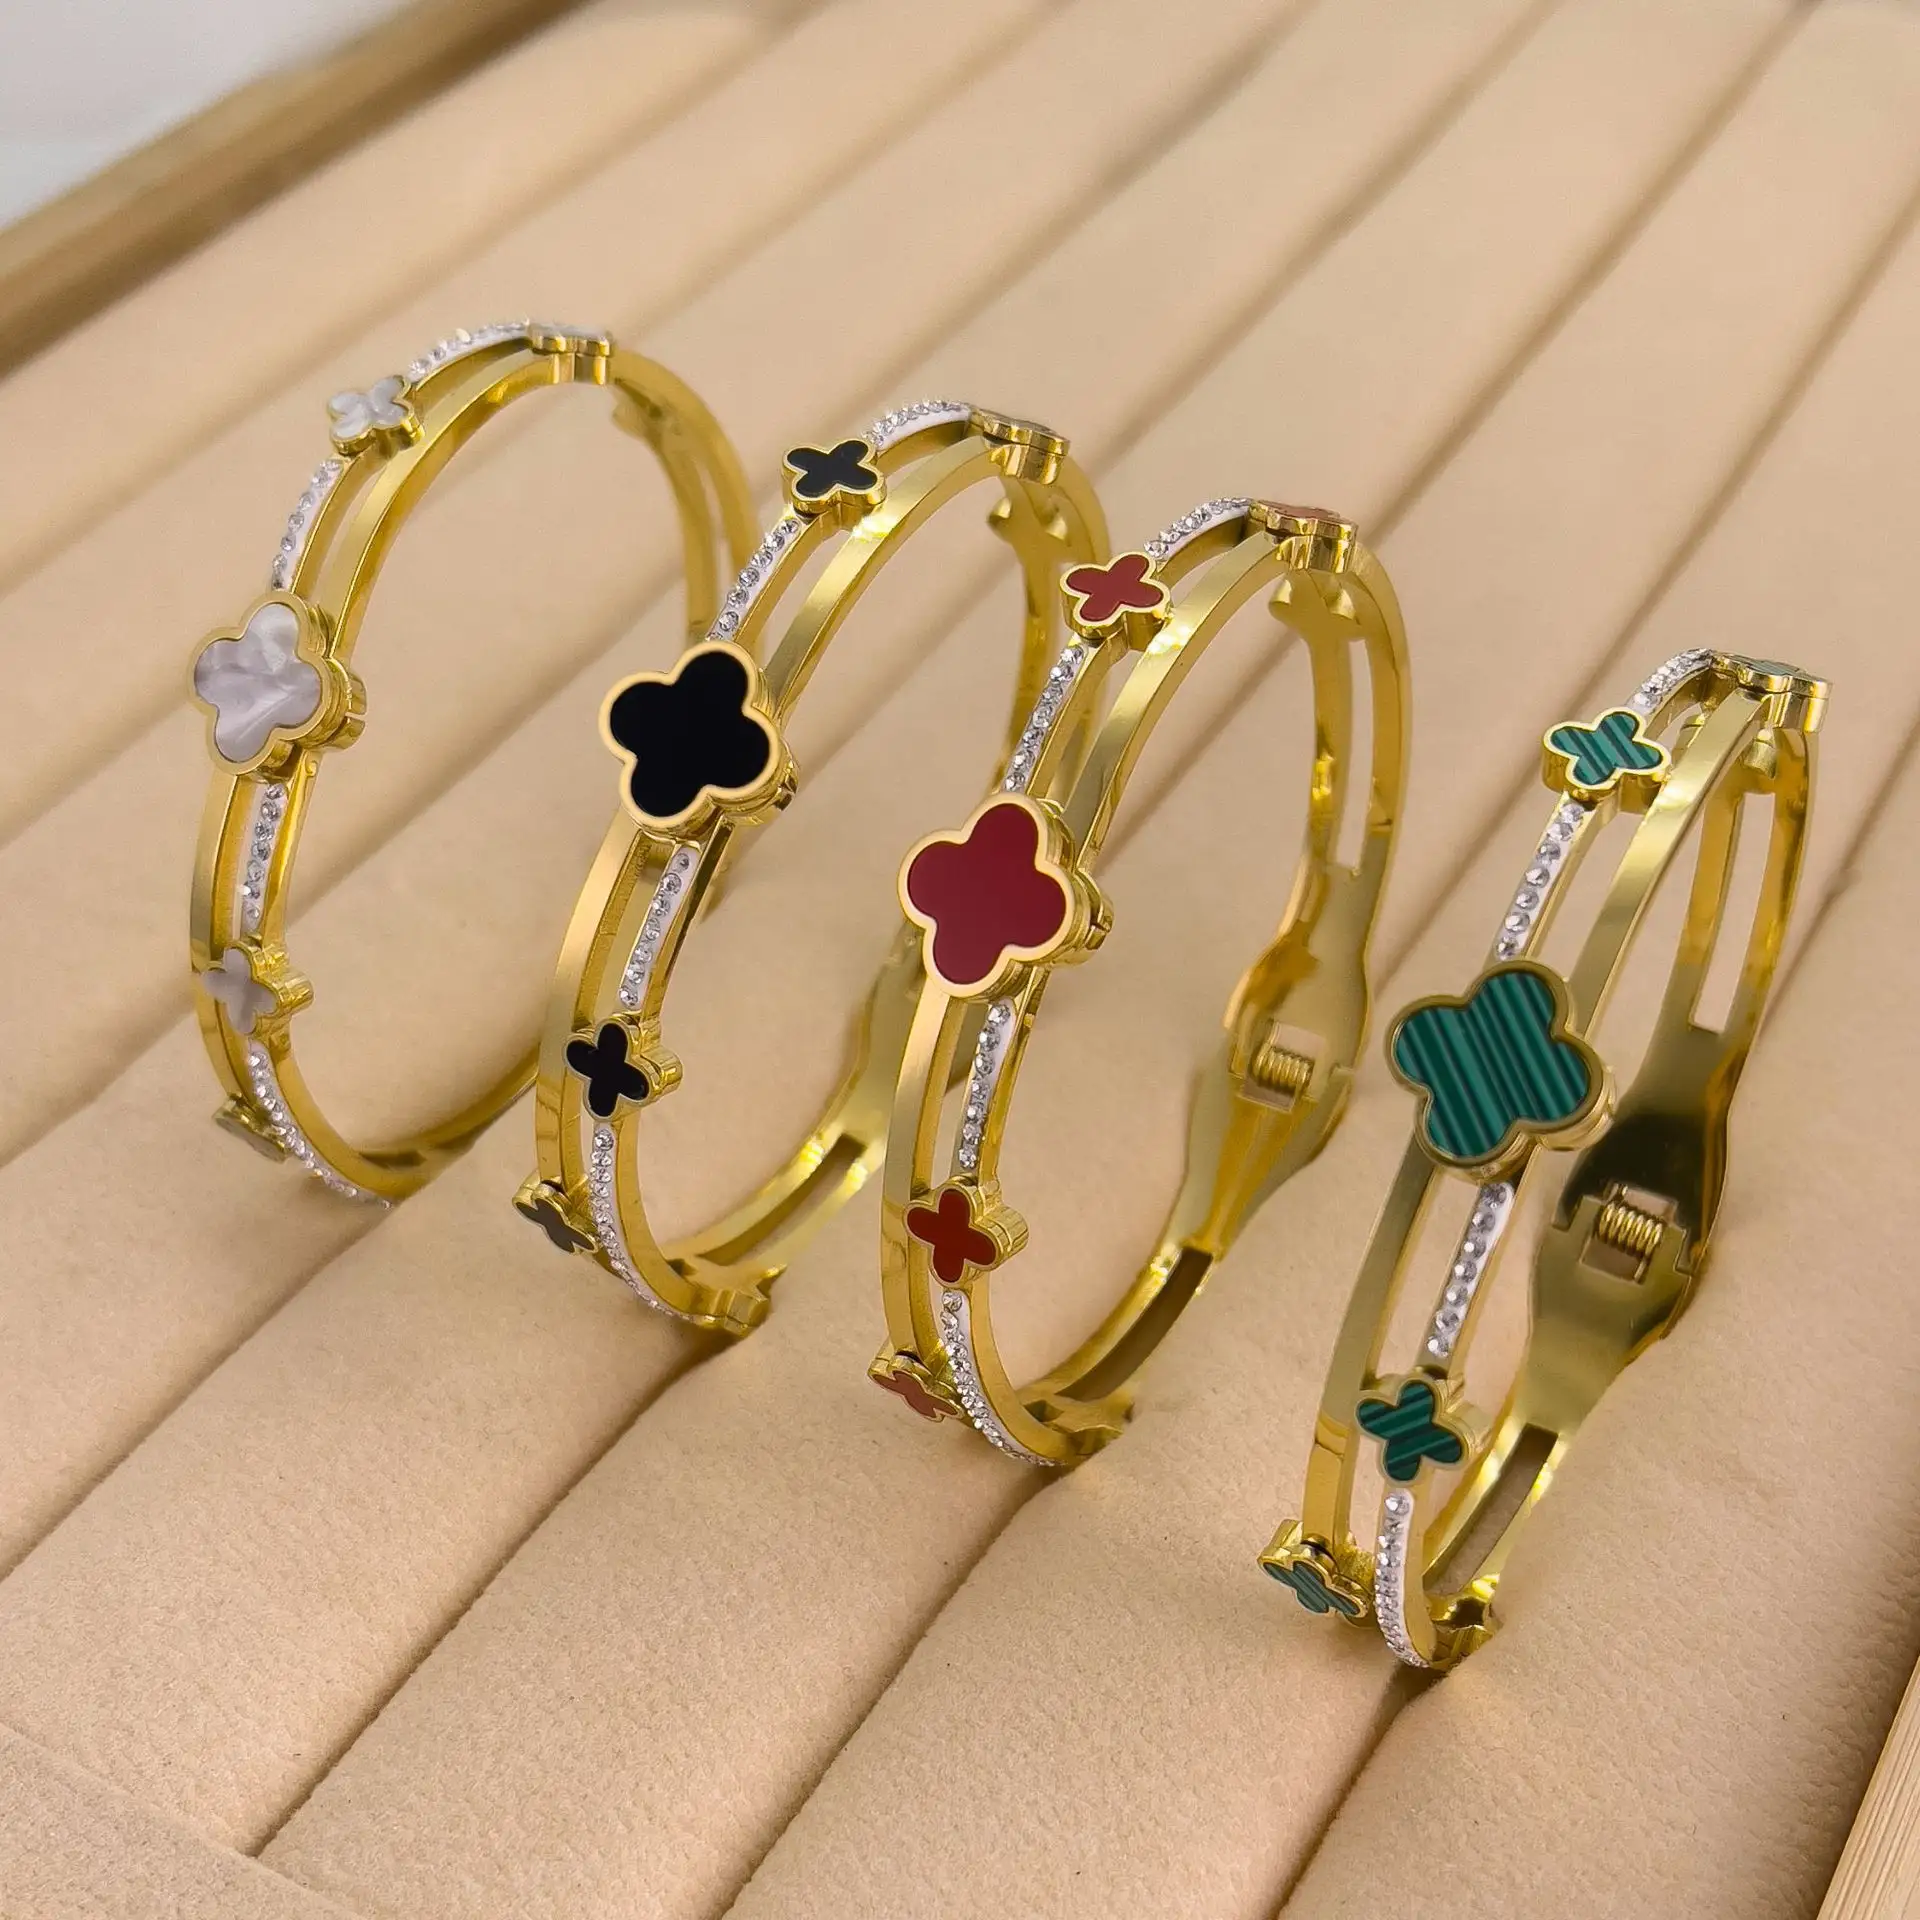 XIXI Acier, неоксибилизированные женские дизайнерские позолоченные браслеты из нержавеющей стали 18 карат с четырьмя листьями клевера, модные ювелирные изделия, браслеты